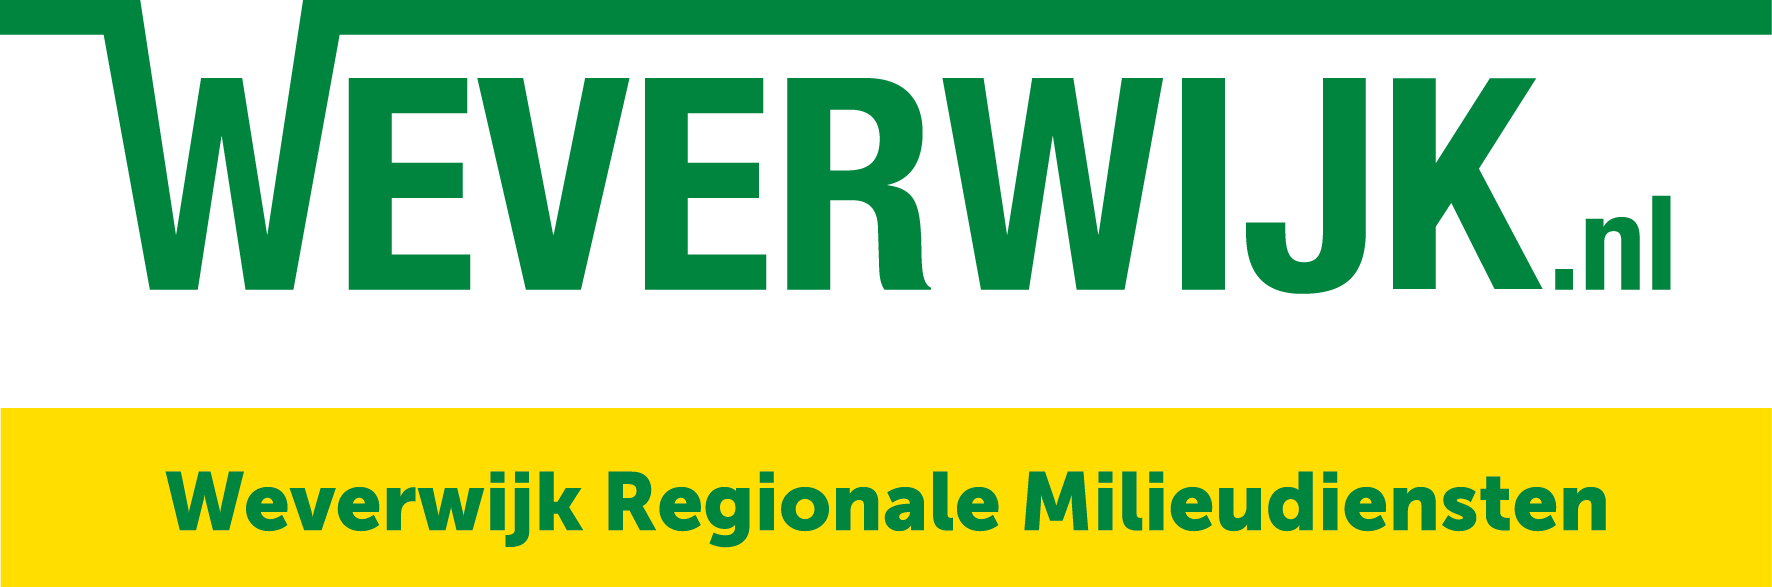 Weverwijk Regionale Milieudiensten